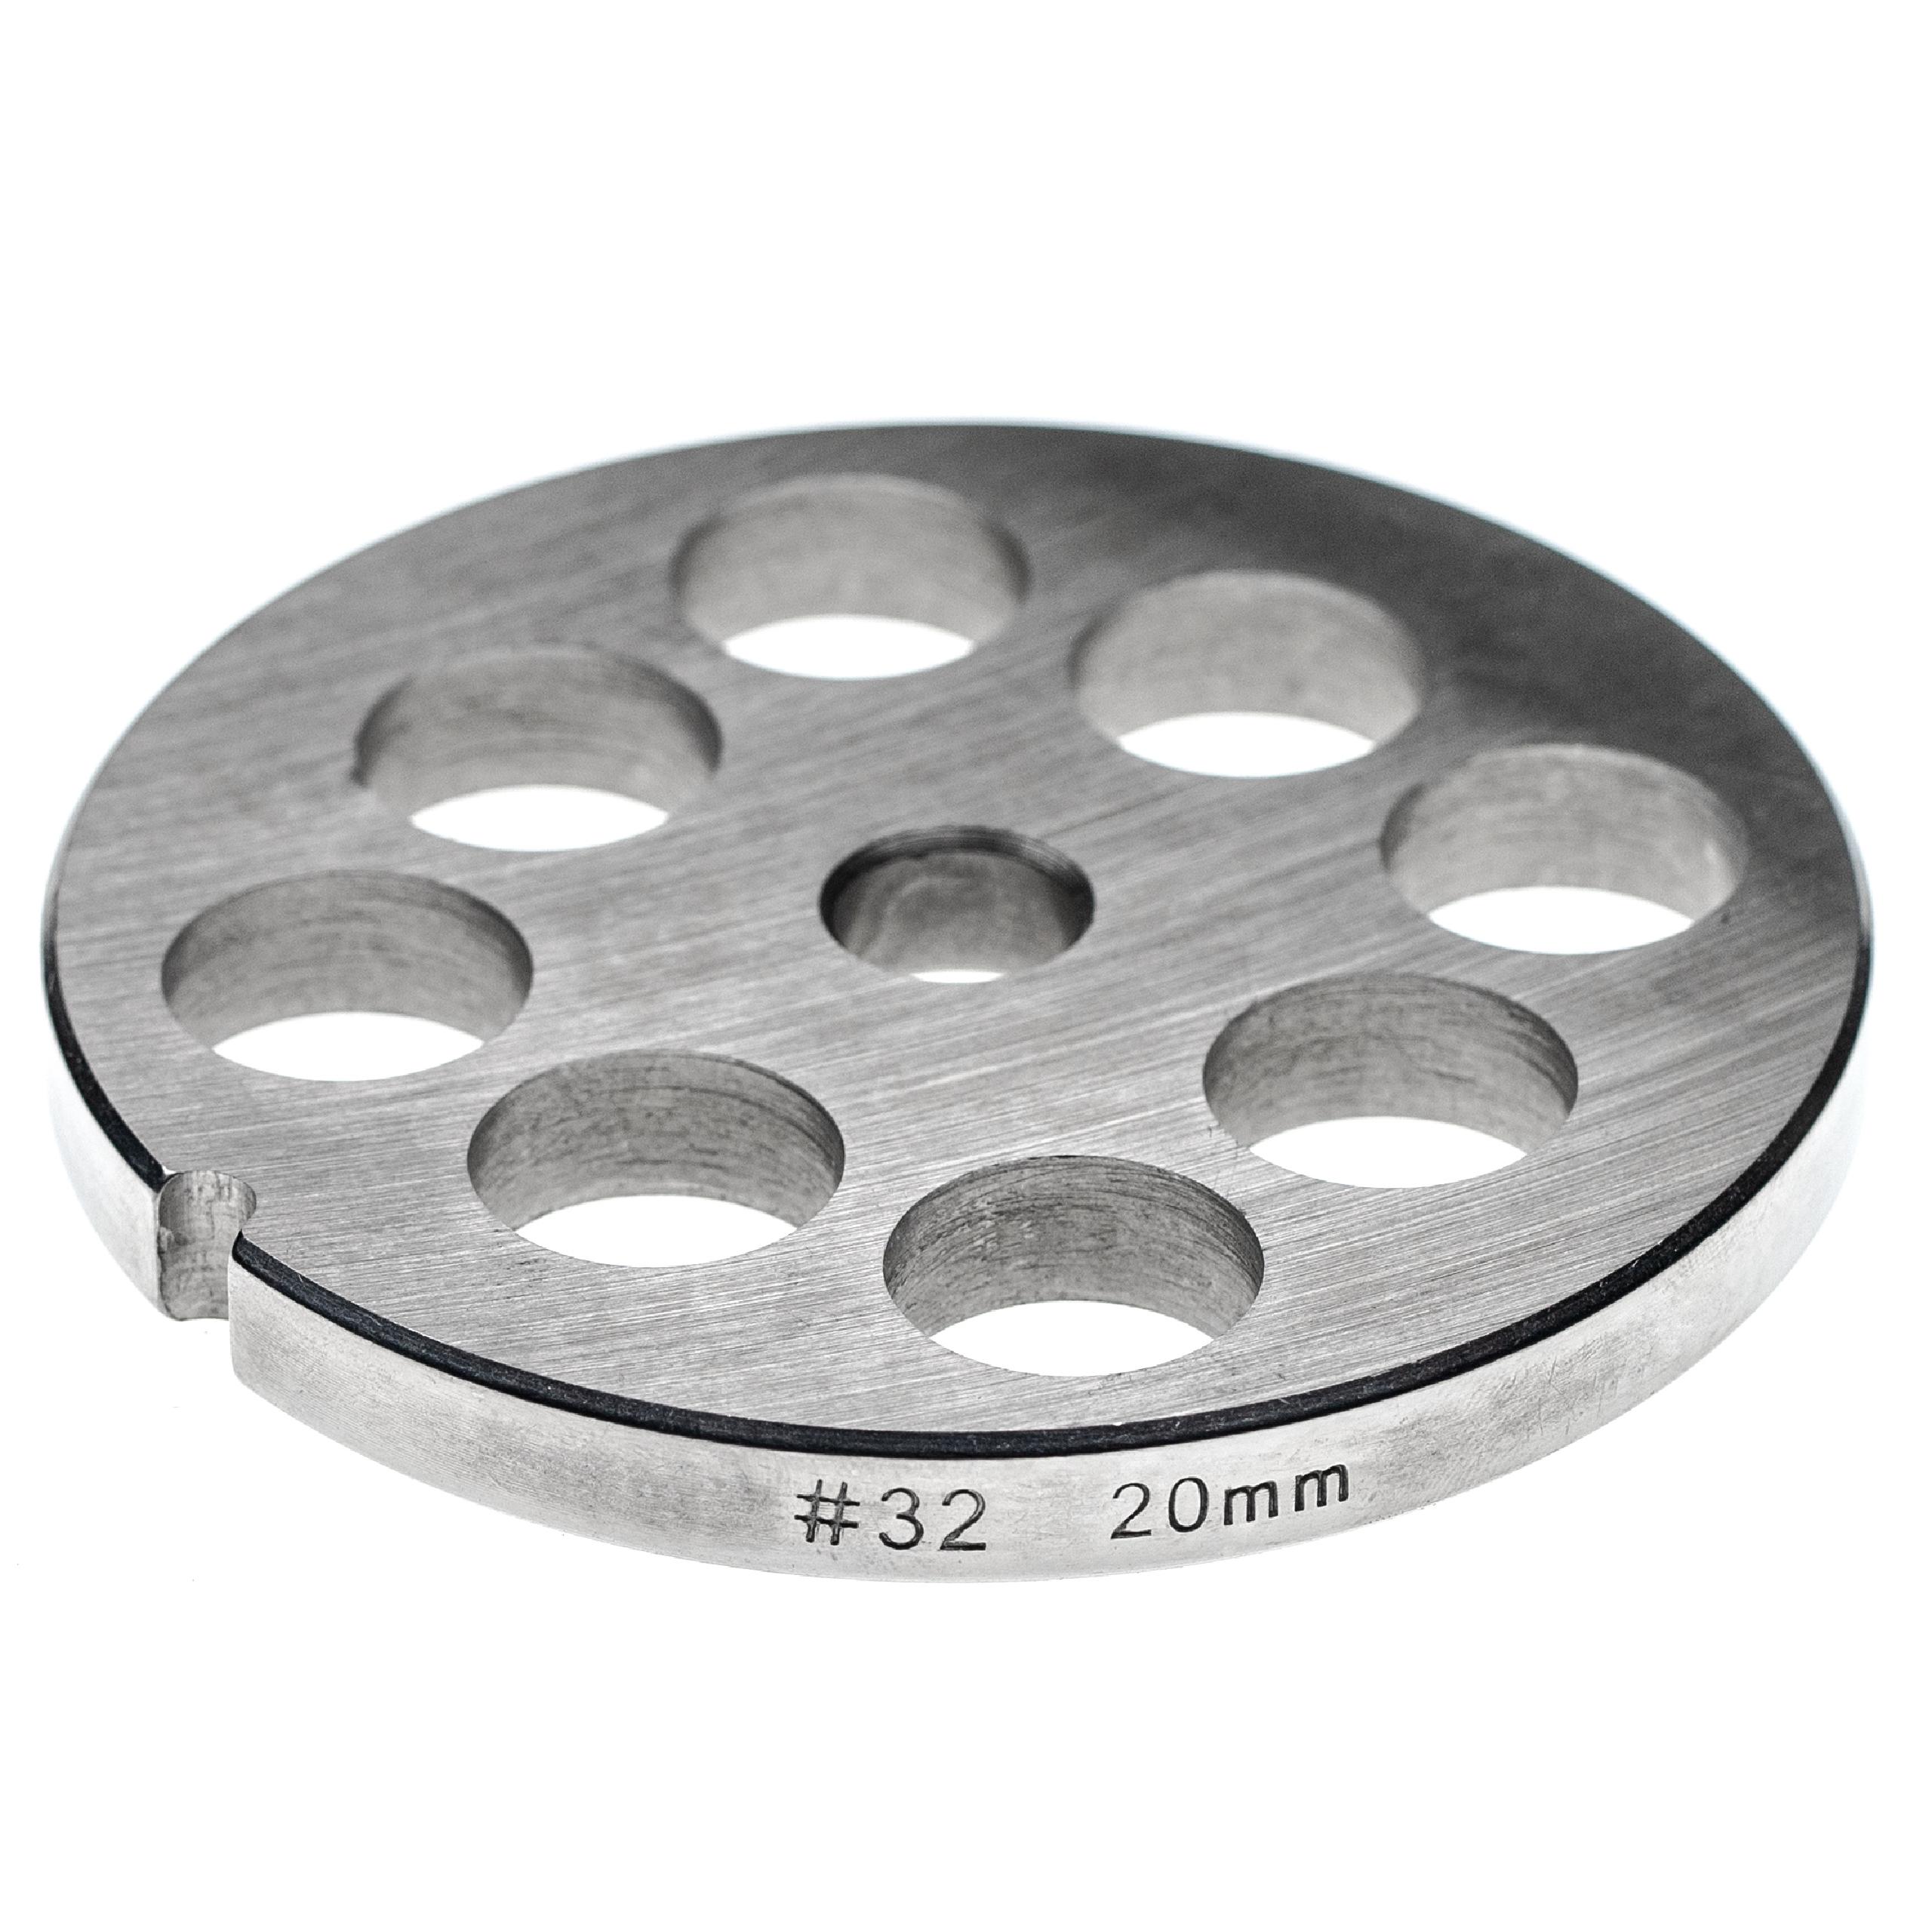 Disque perforé t. 32 pour hachoir ADE, Caso, Fama, KBS, Porkert - trous 20 mm ⌀, acier inoxydable